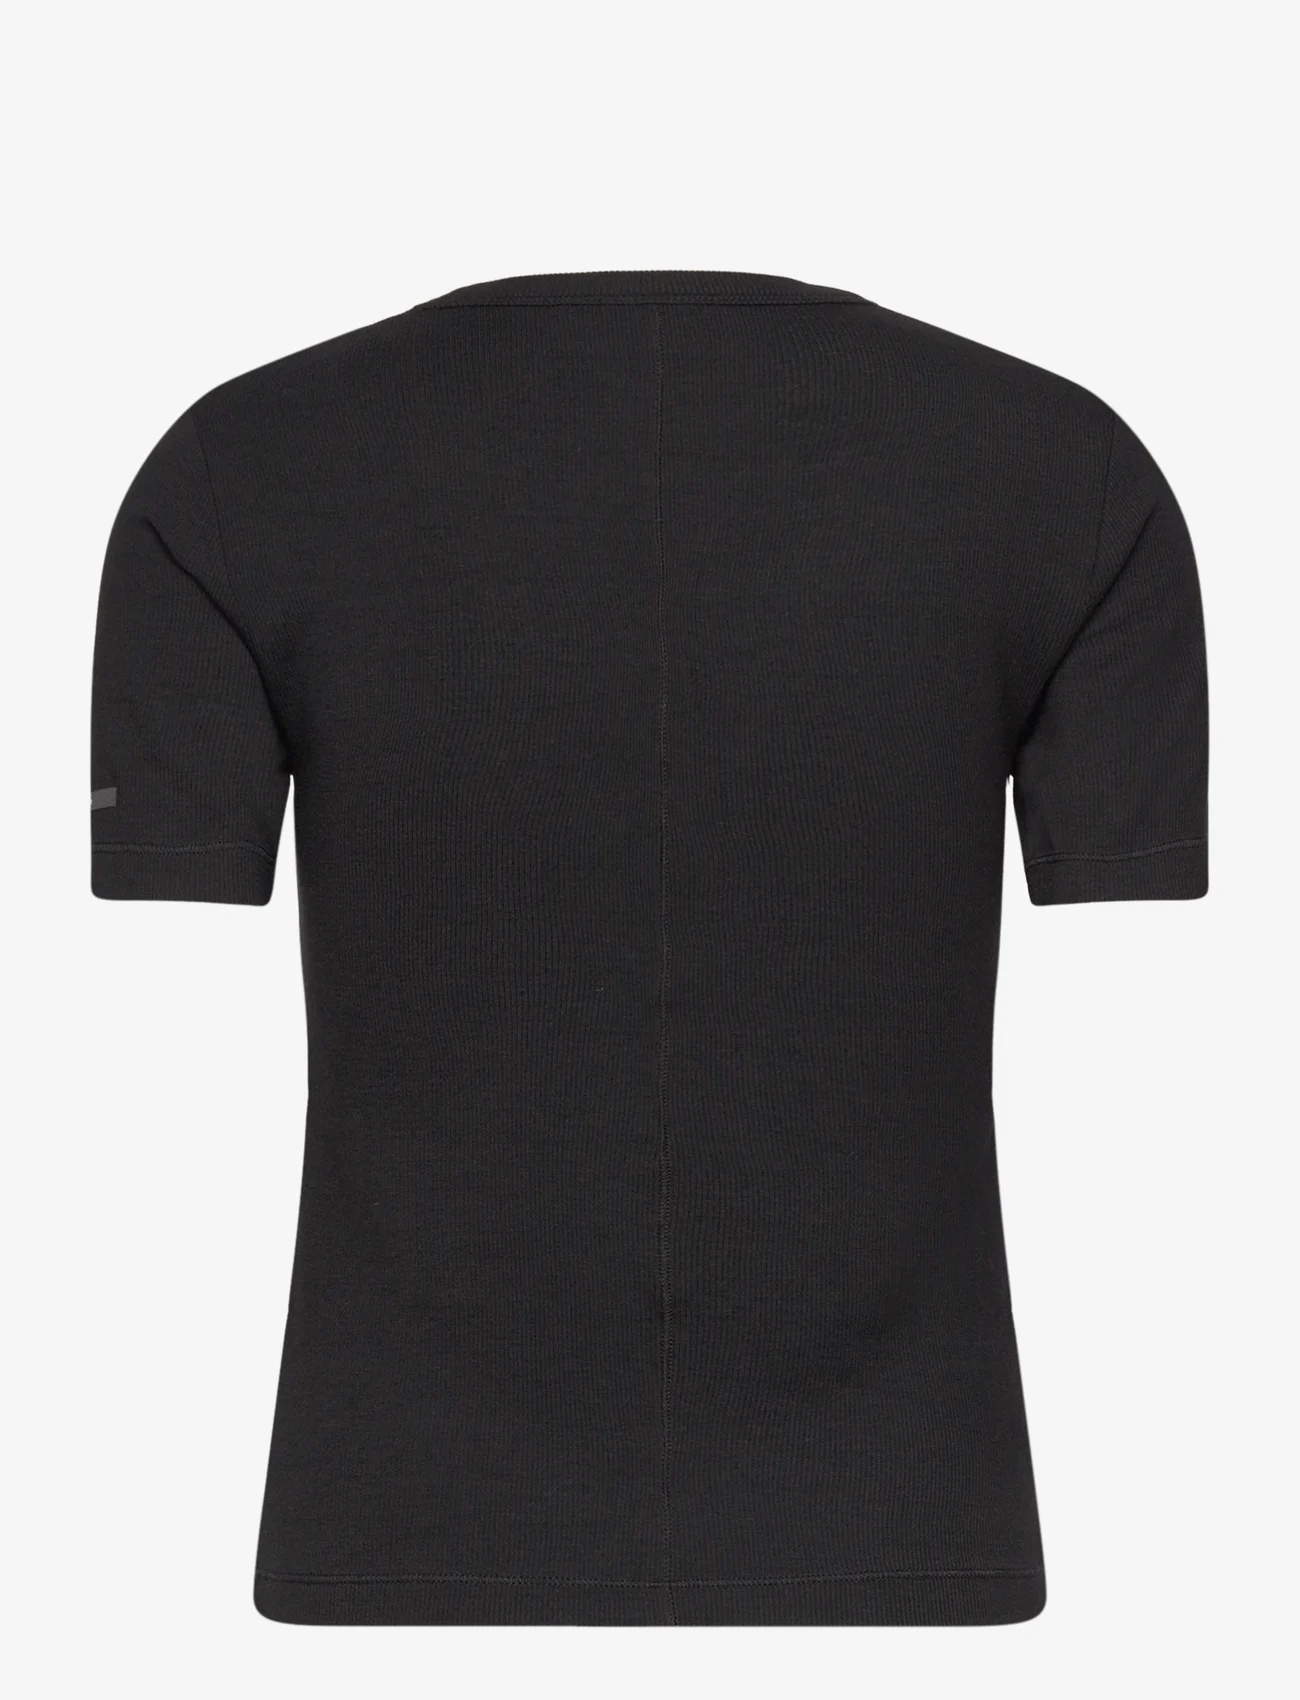 Calvin Klein - MODAL RIB SS TEE - marškinėliai - ck black - 1